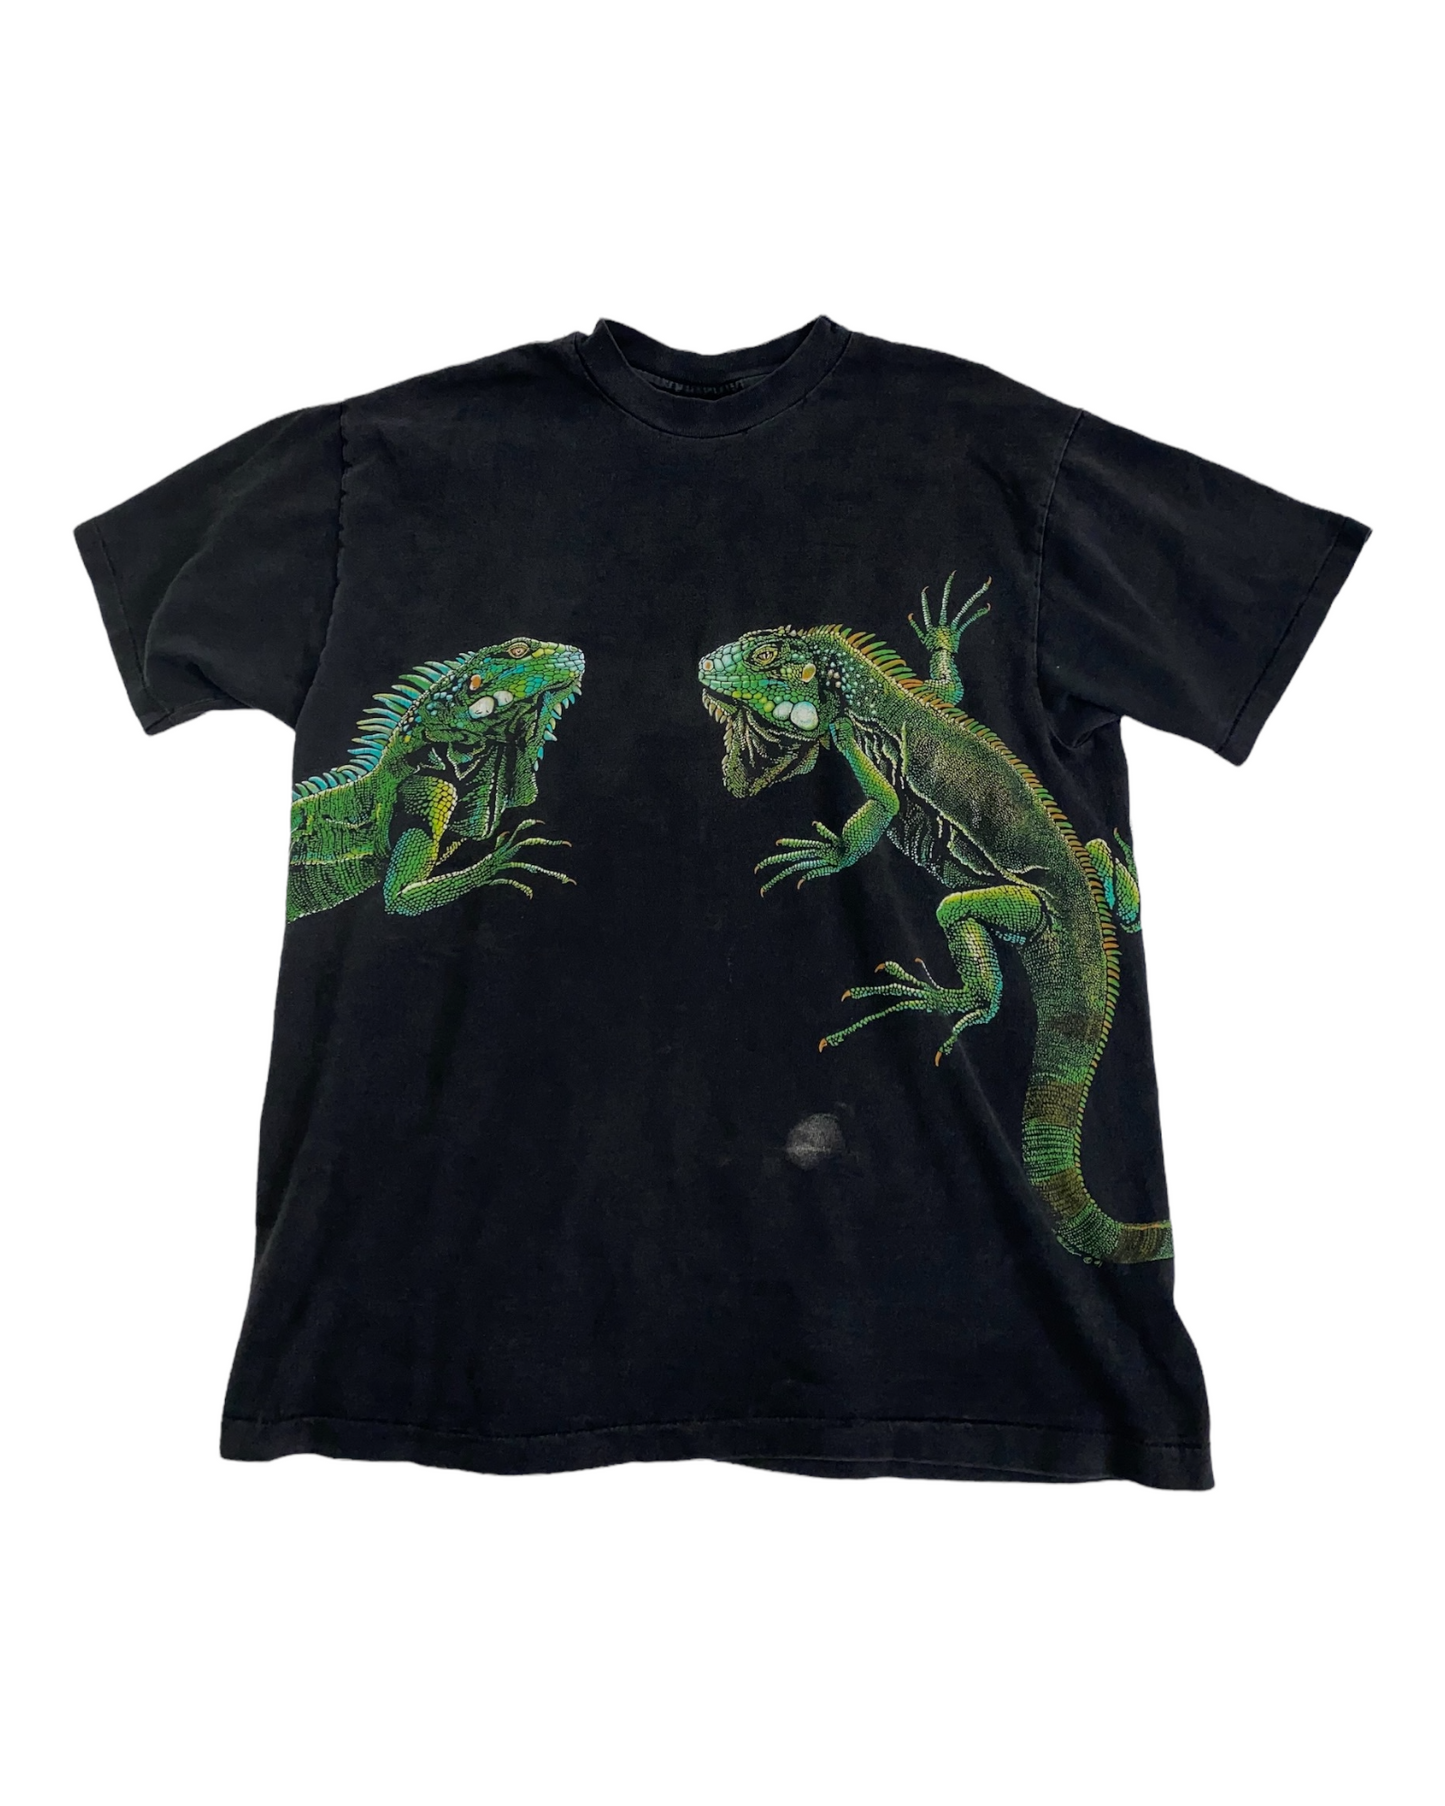 Vintage 1991 Iguana T-shirt